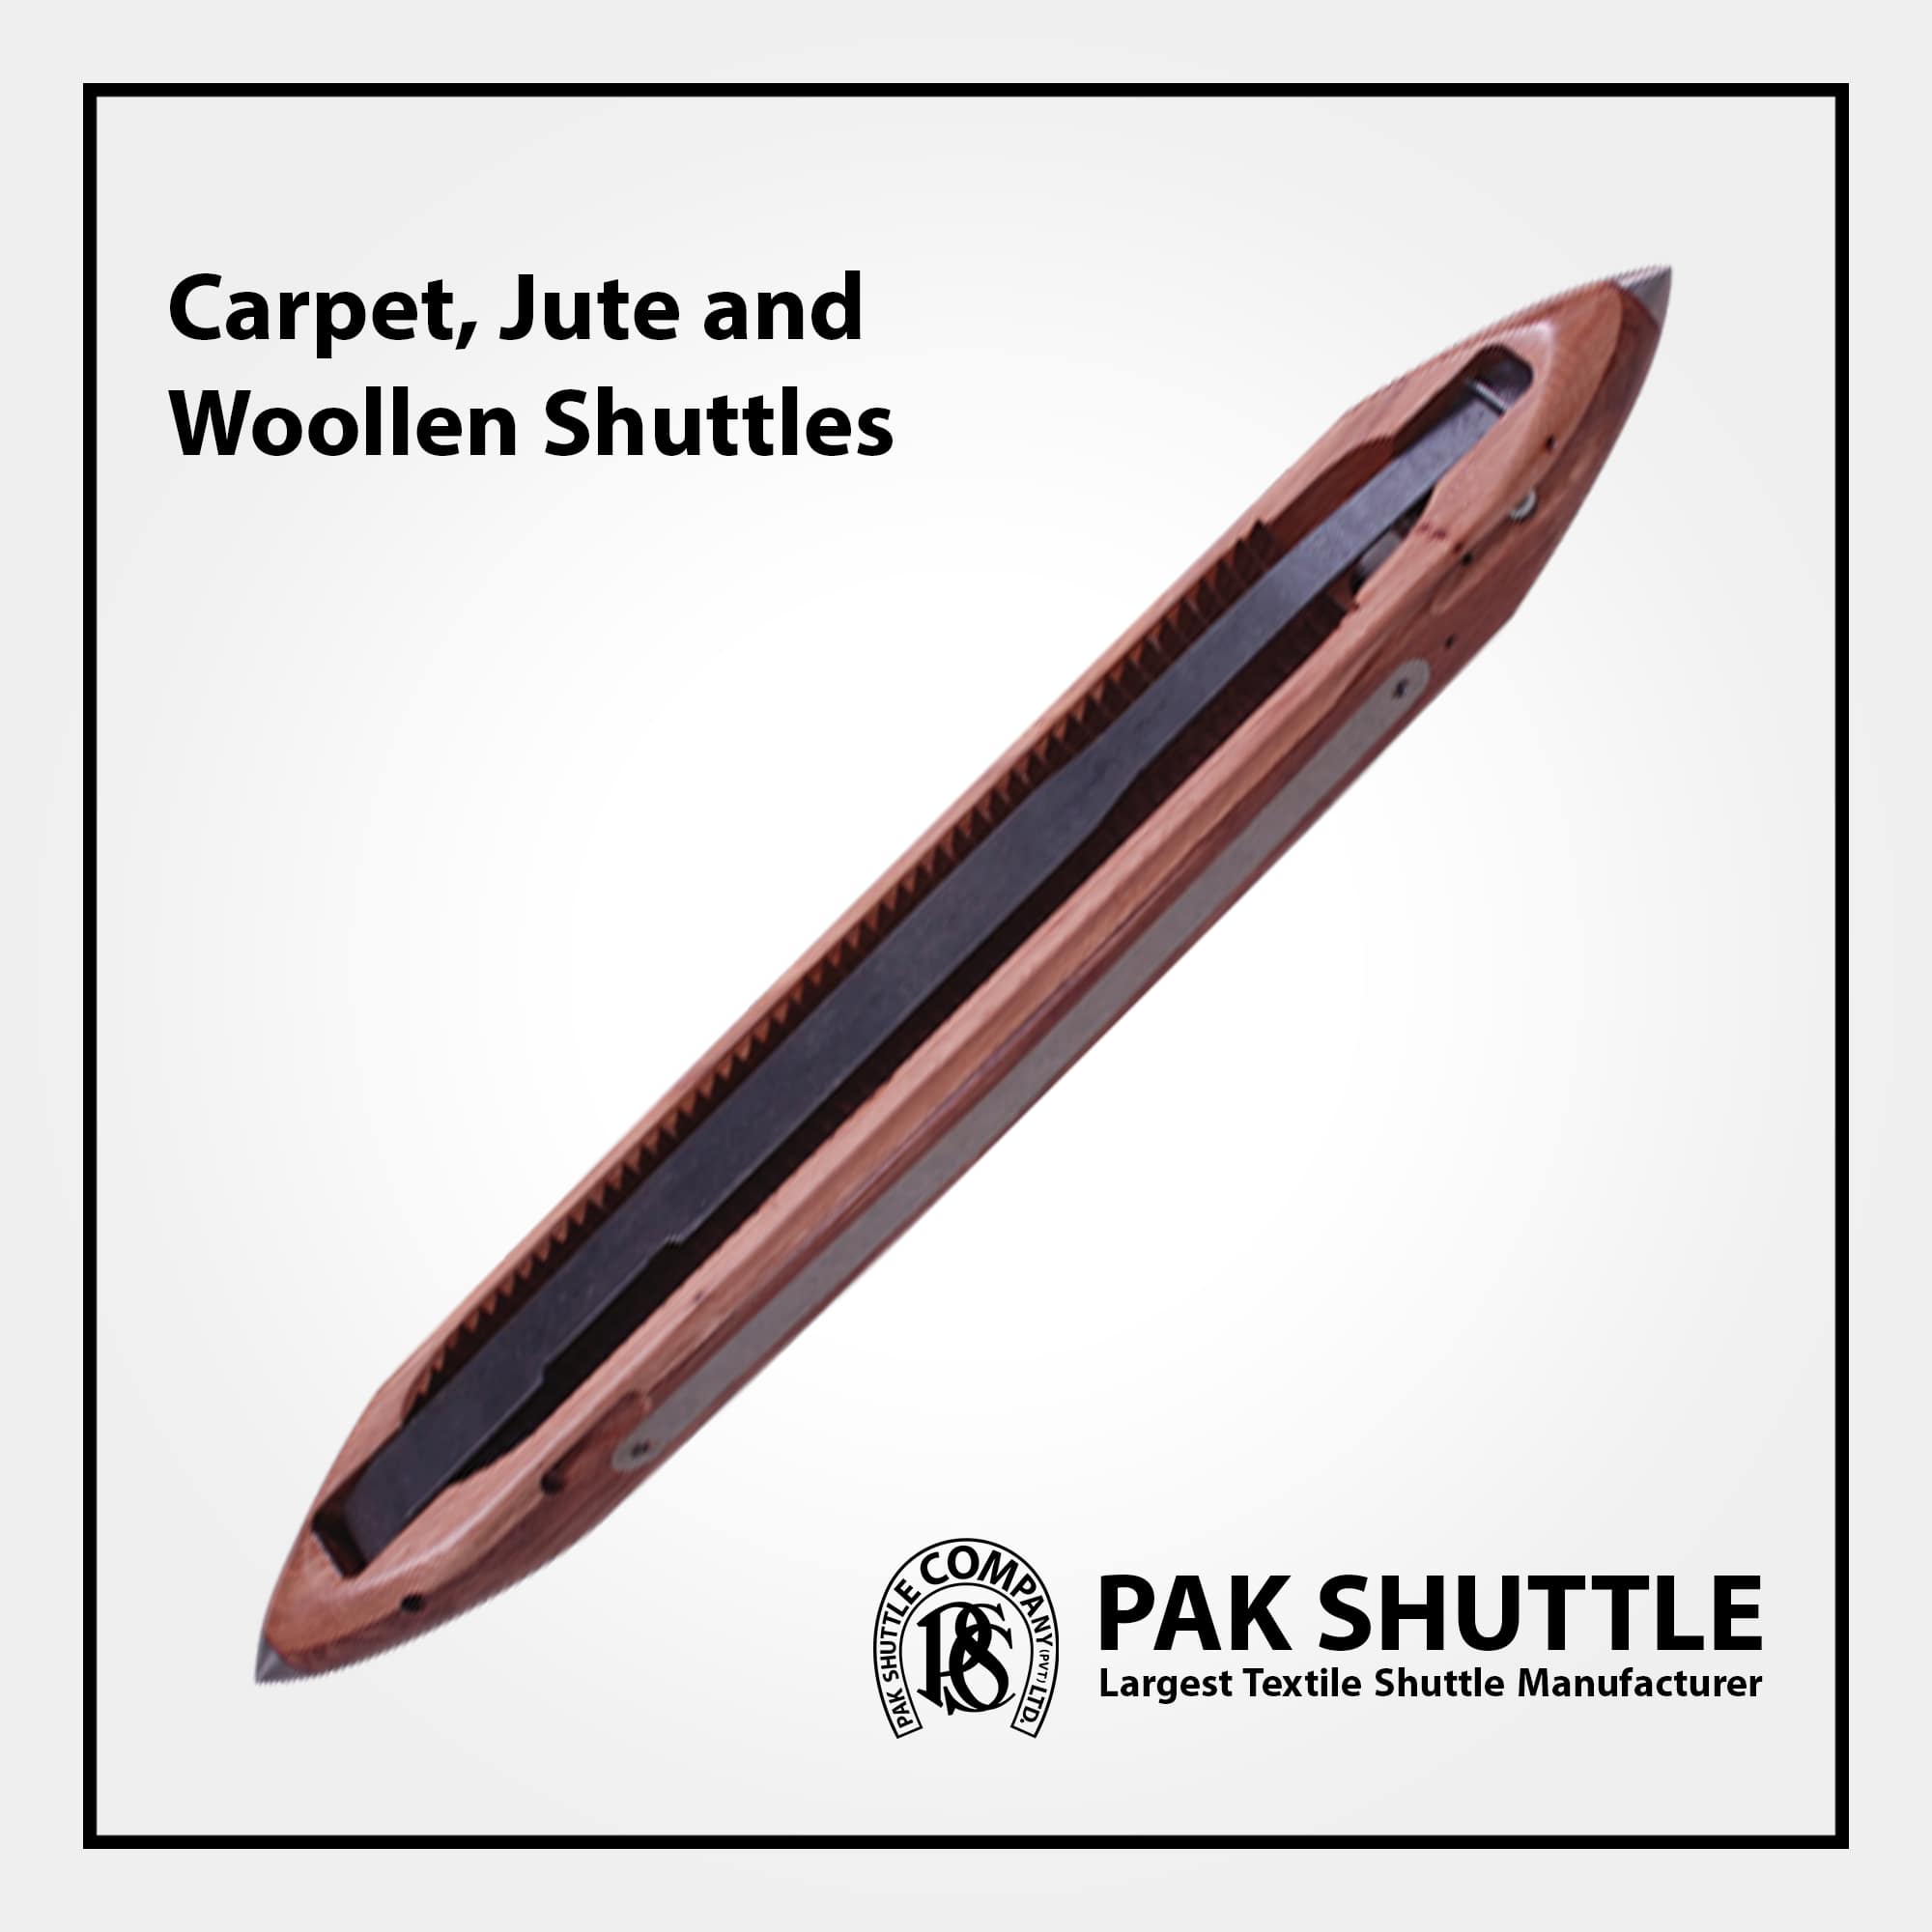 Carpet, Jute & Woolen Shuttle by Pak Shuttle Company Pvt Ltd.